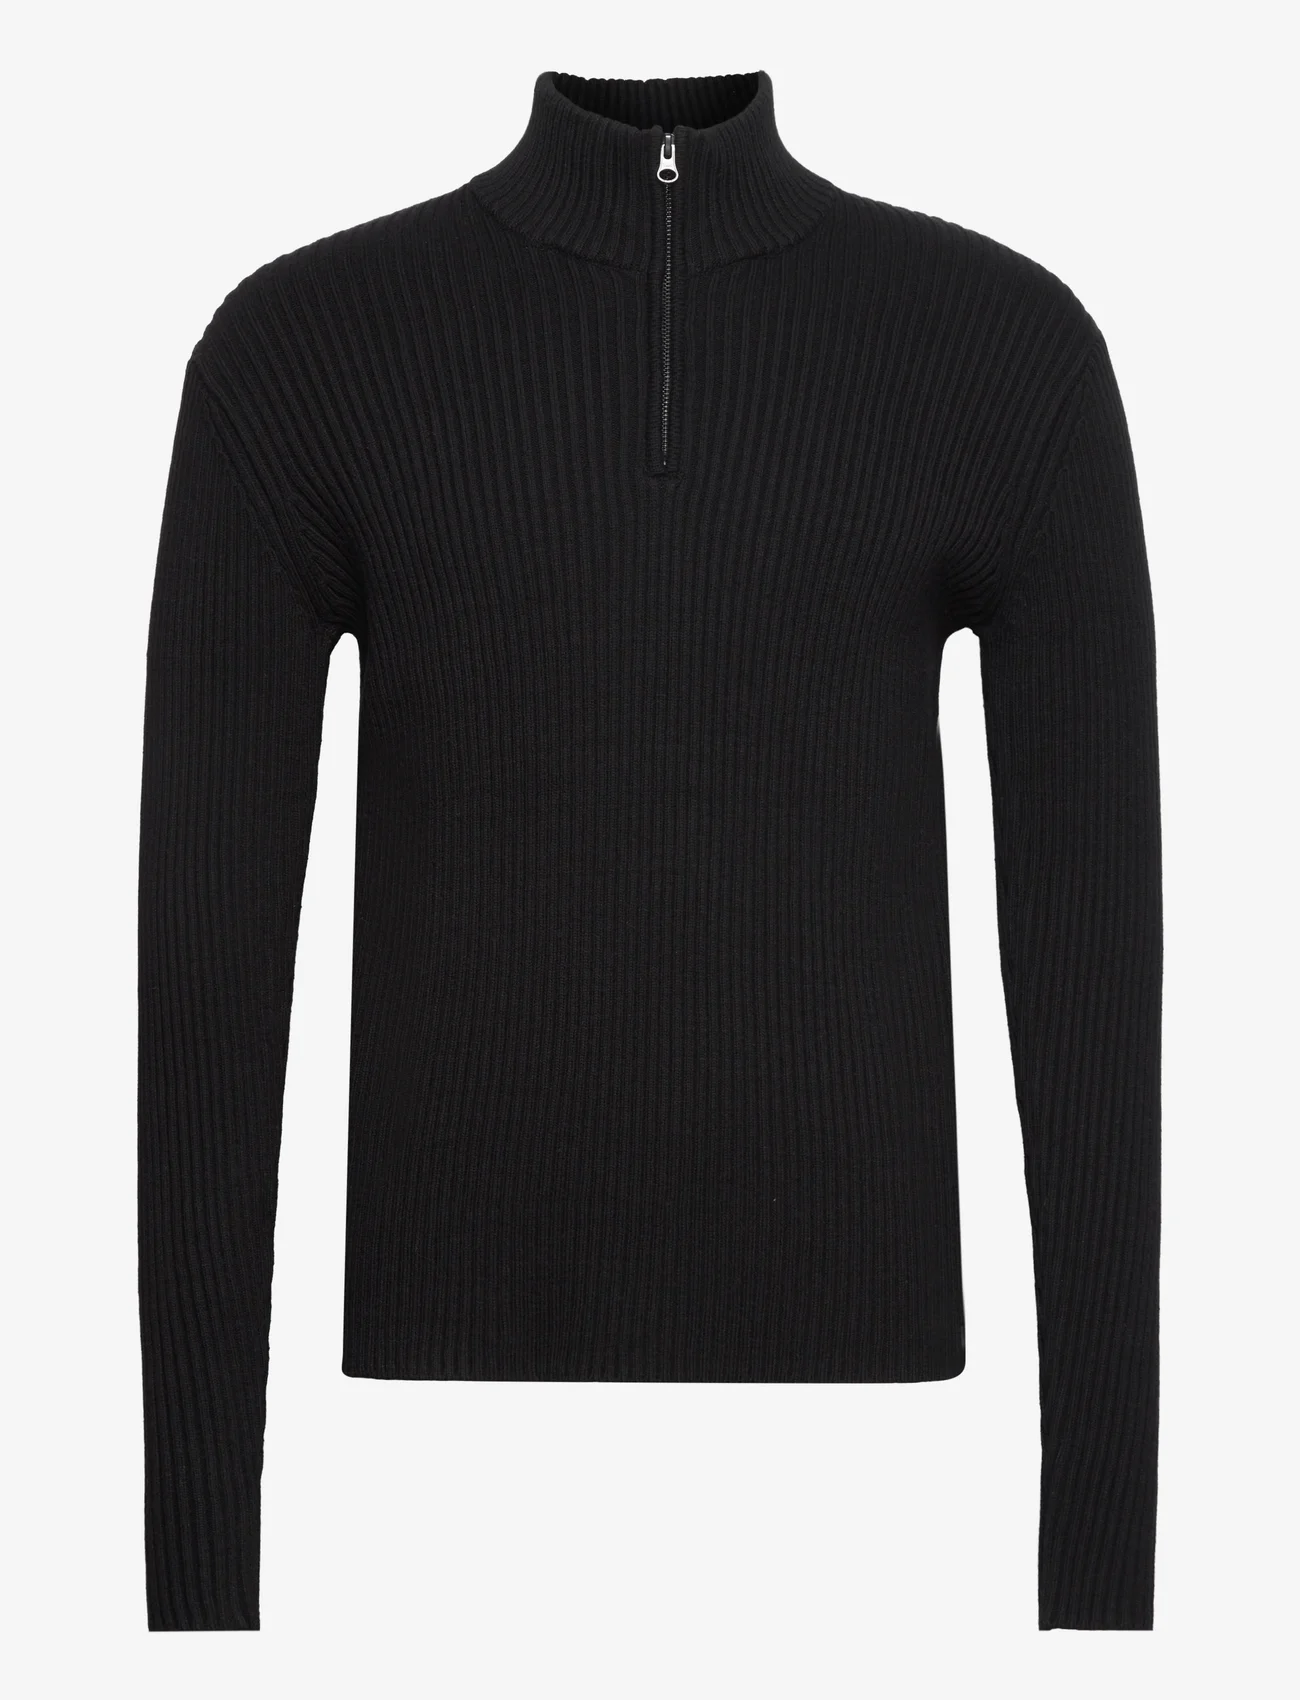 Bruuns Bazaar - SimBBBilly zip knit - heren - black - 0